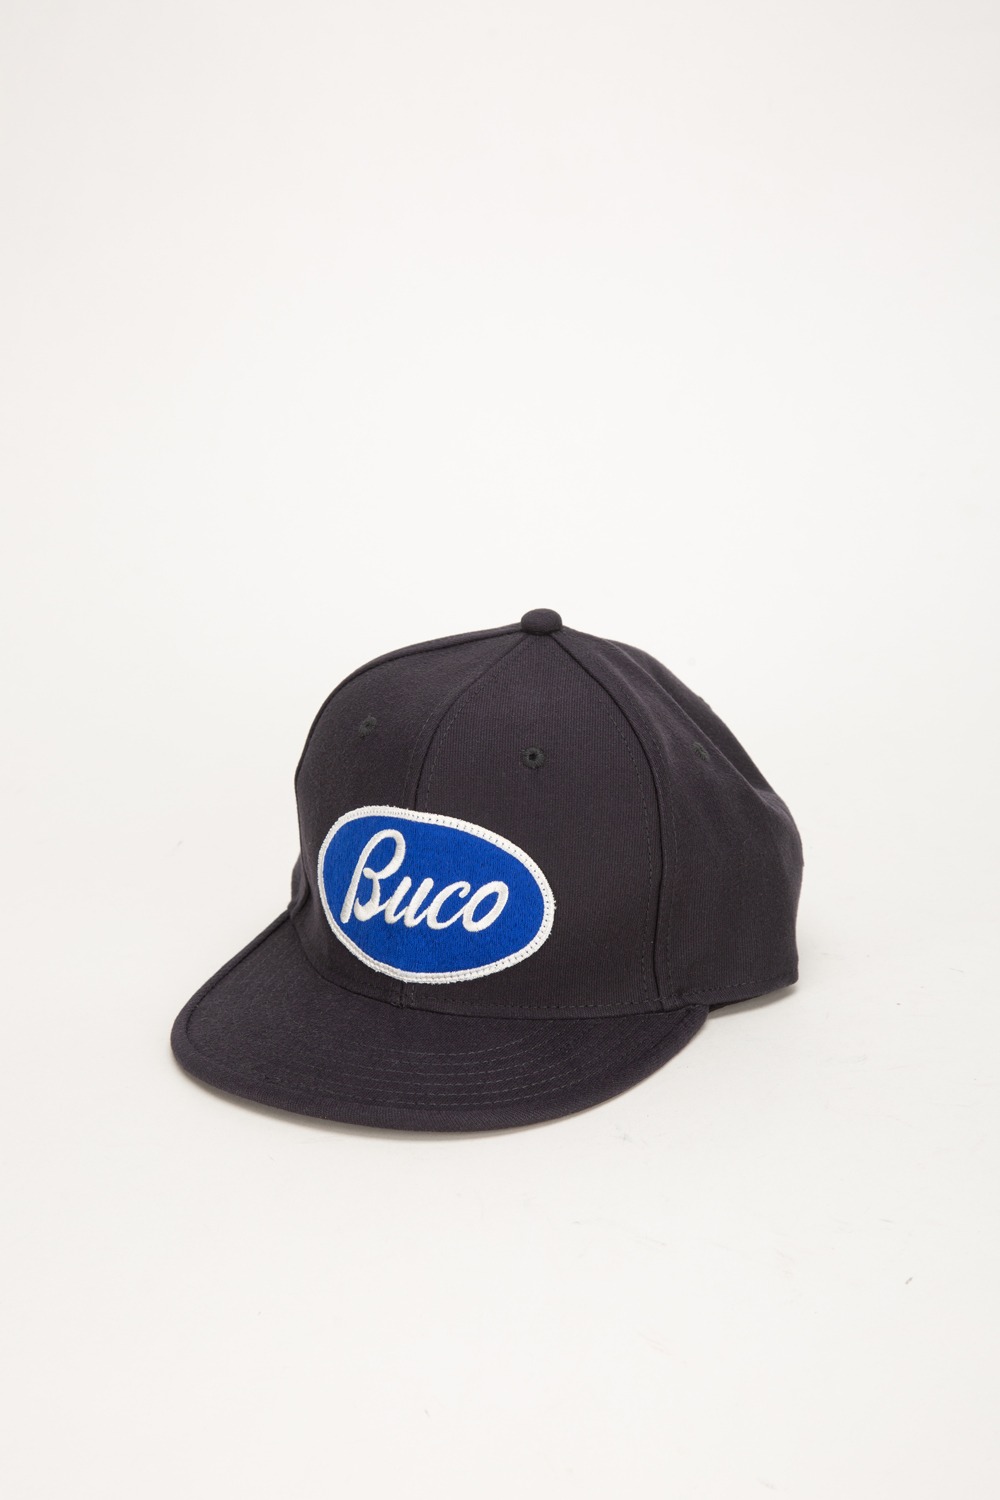 BUCO STRAP-BACK CAP NAVY